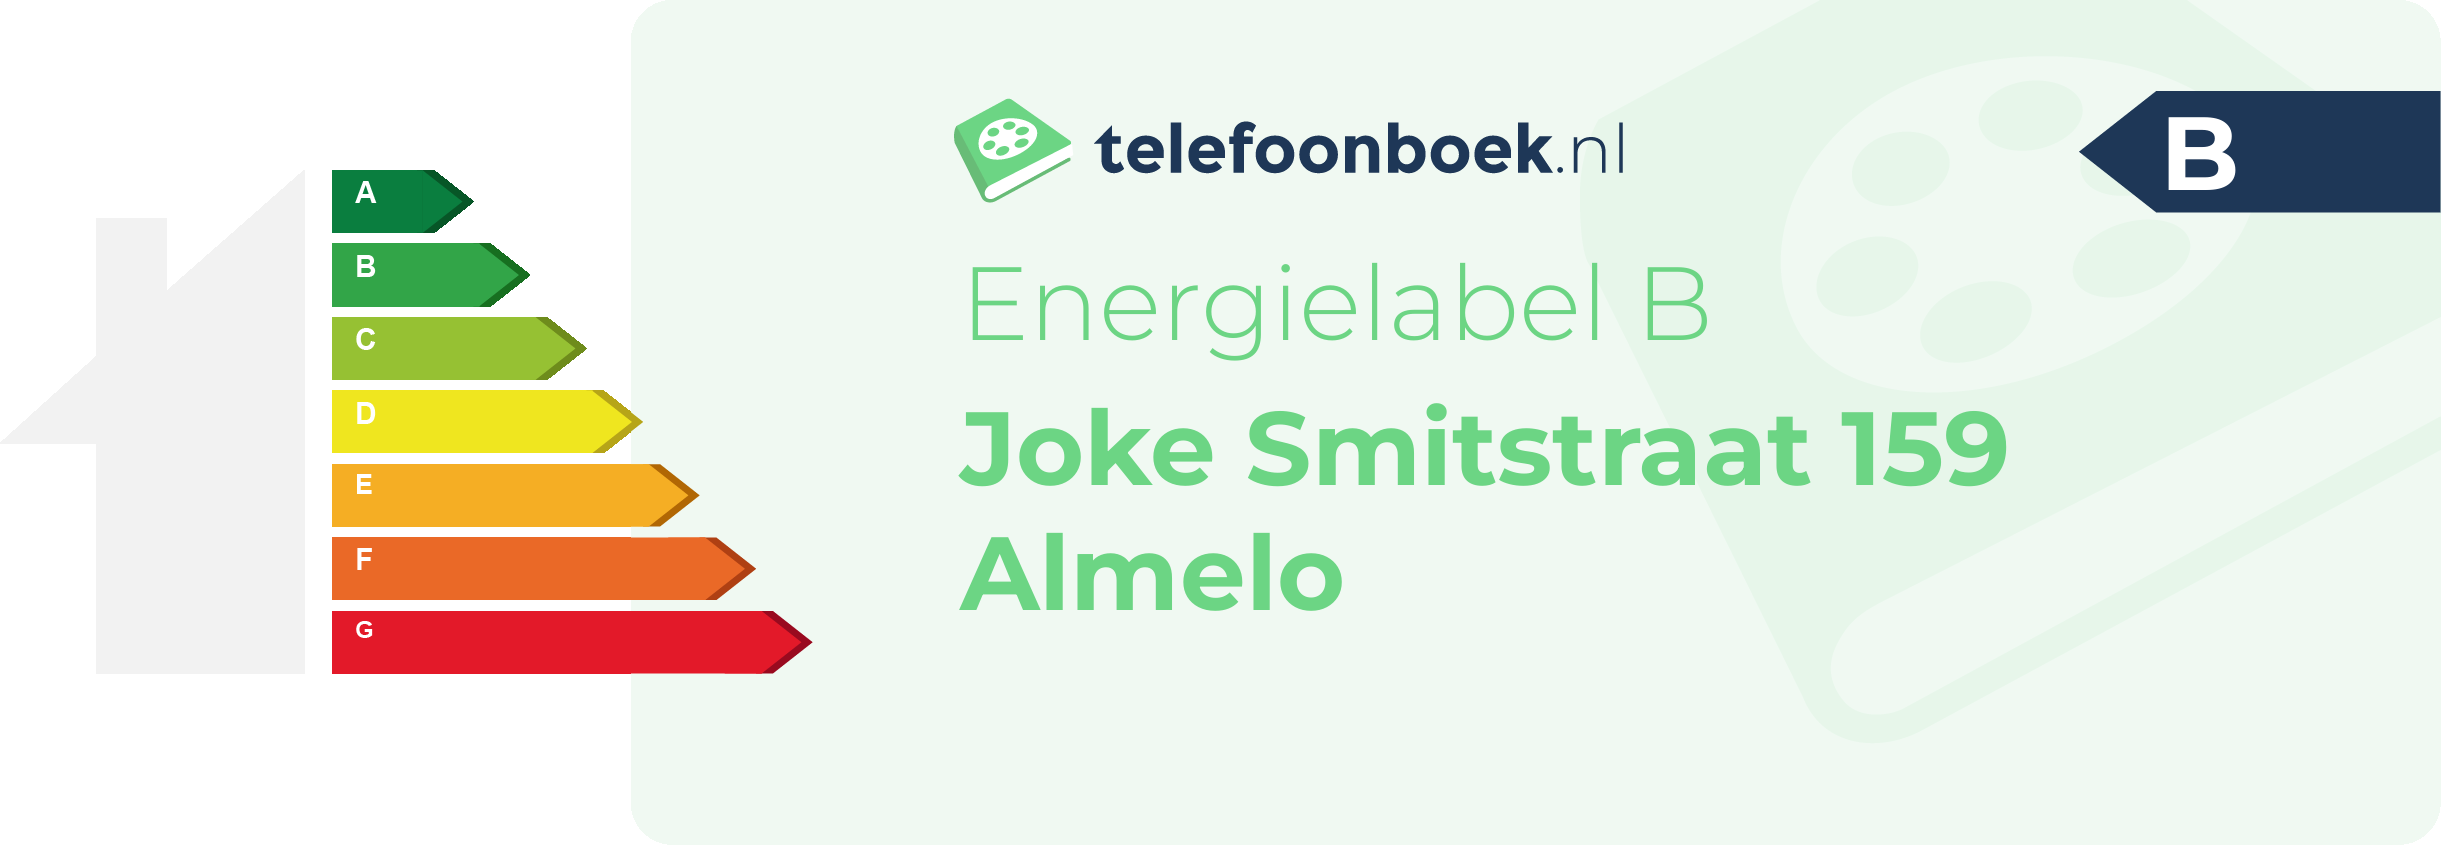 Energielabel Joke Smitstraat 159 Almelo